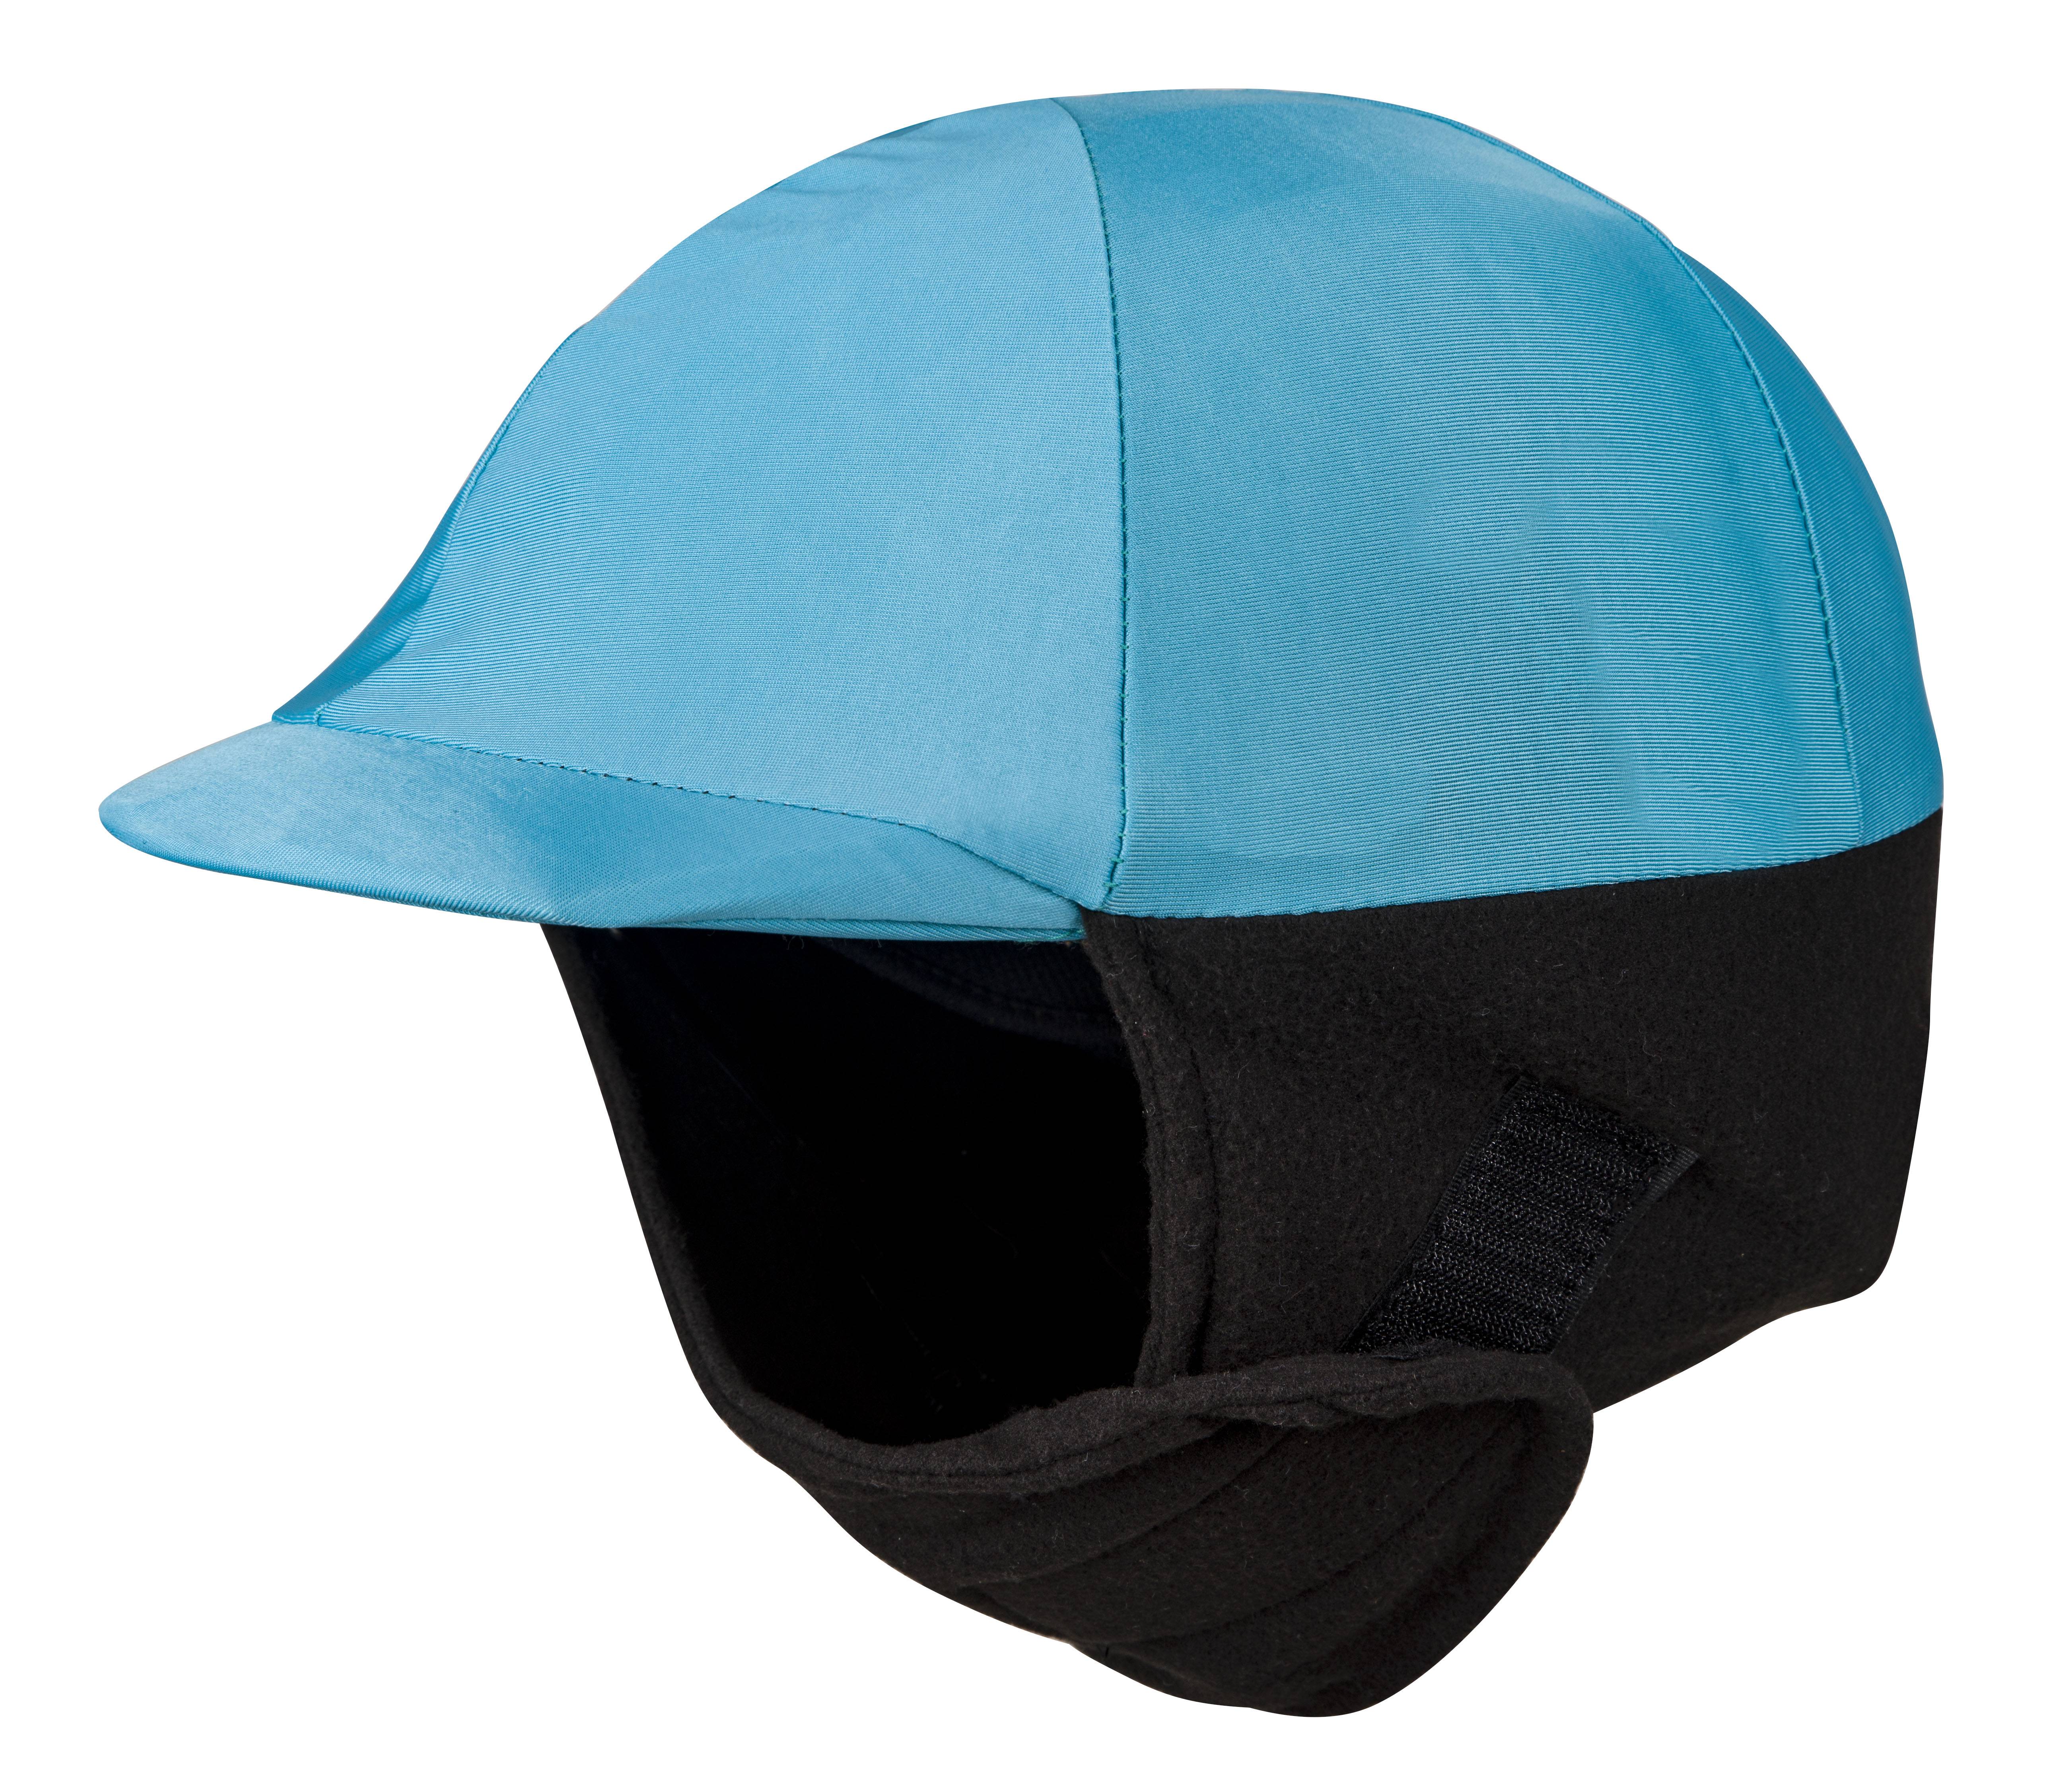 StretchX / Fleece Helmet Cover